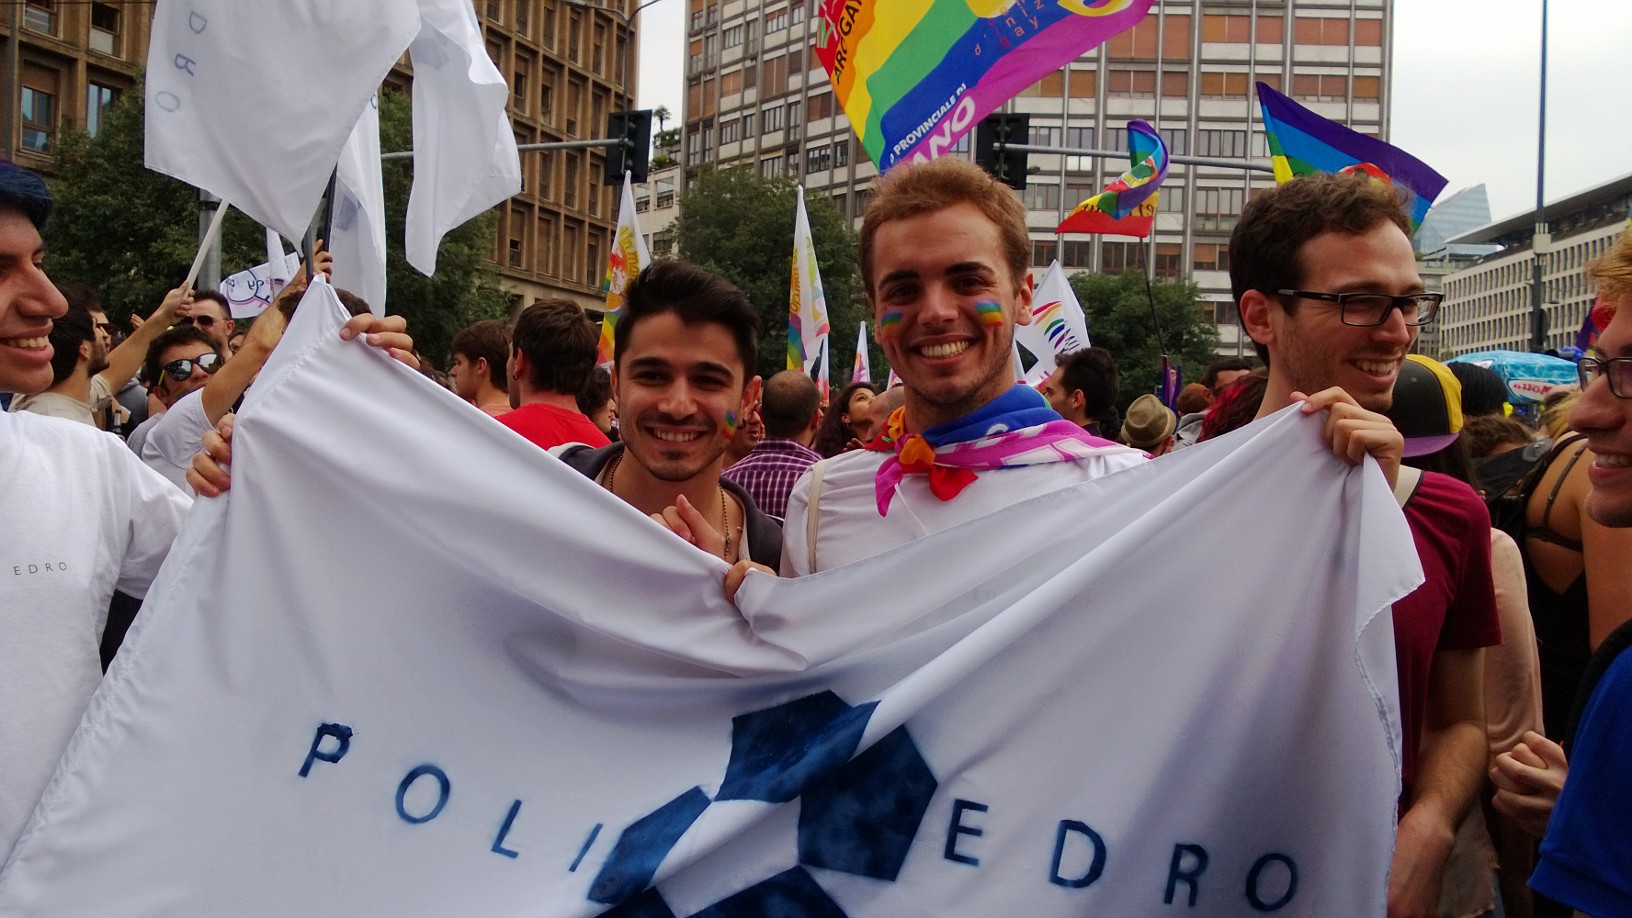 PoliEdro al Milano Pride 2013